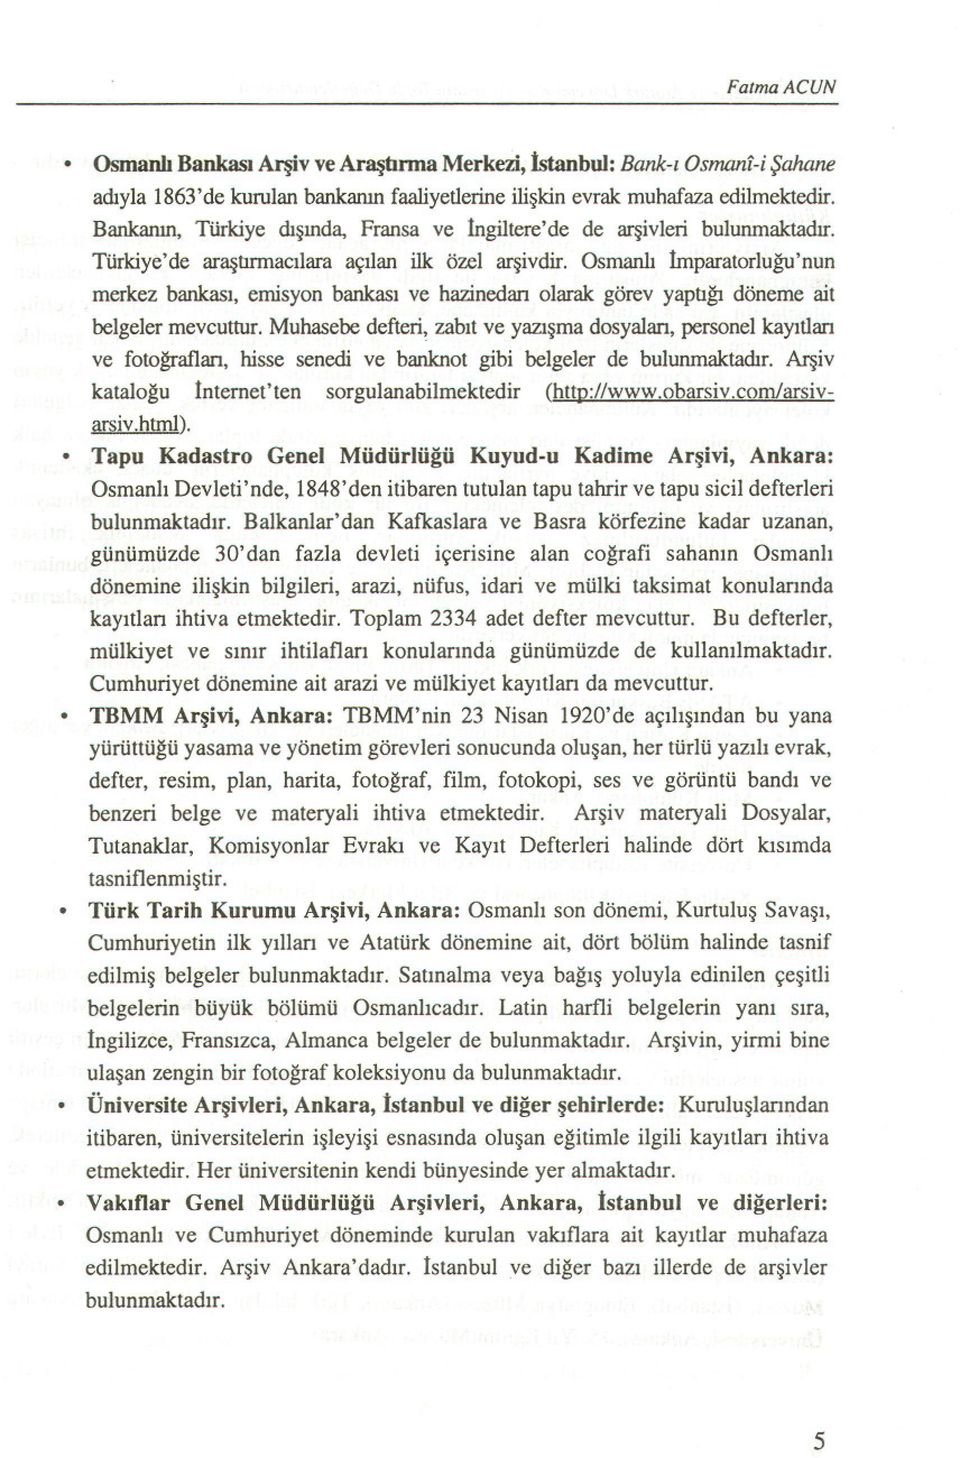 Osmanli hnparatorlugu'nun merkez bankasi, emisyon bankasi ve hazinedari olarak görev yaptigi döneme ait belgeler mevcuttur.